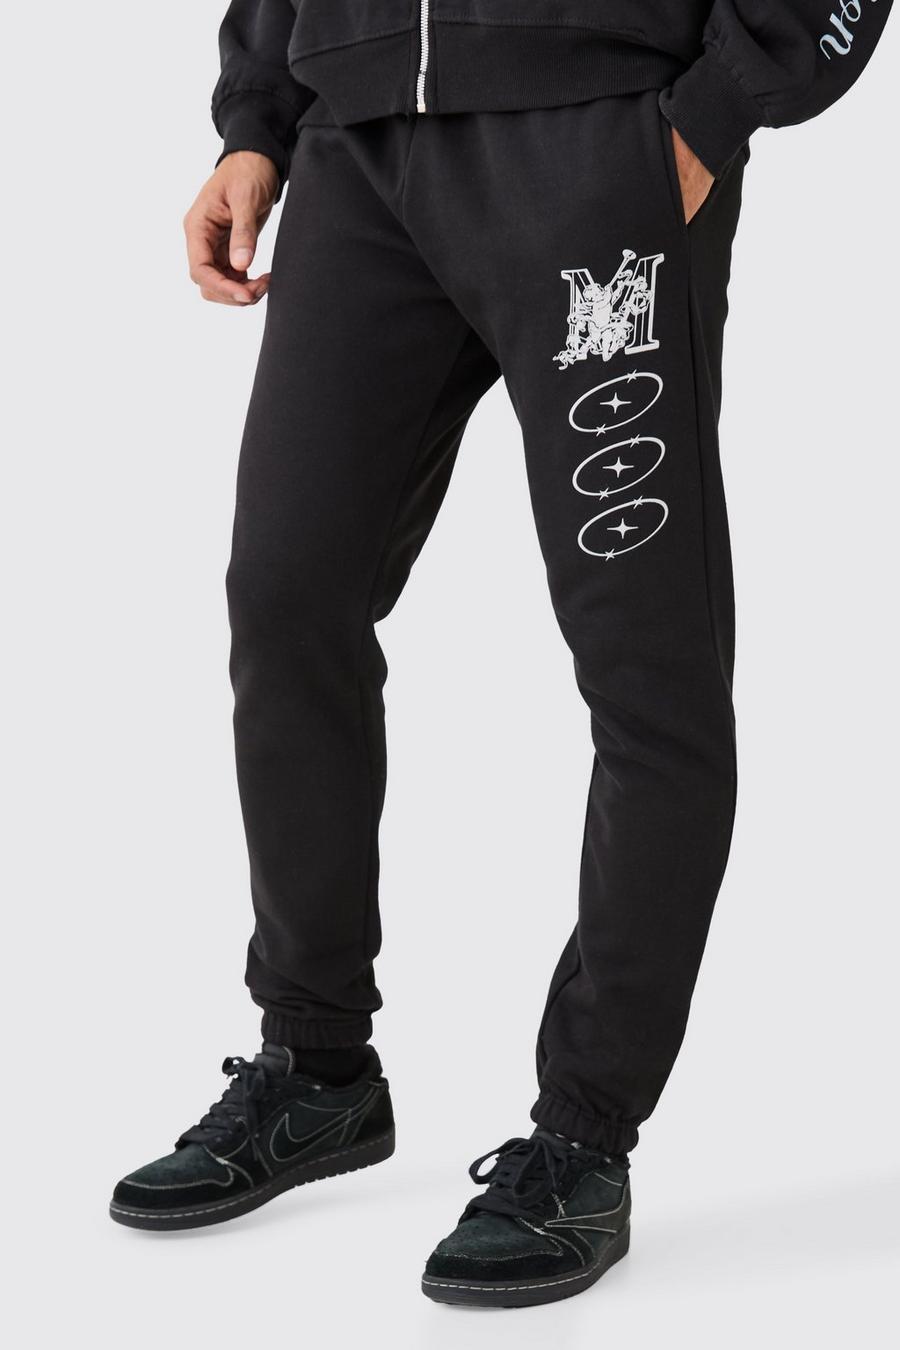 Pantalón deportivo ajustado grueso con estampado variado, Black image number 1